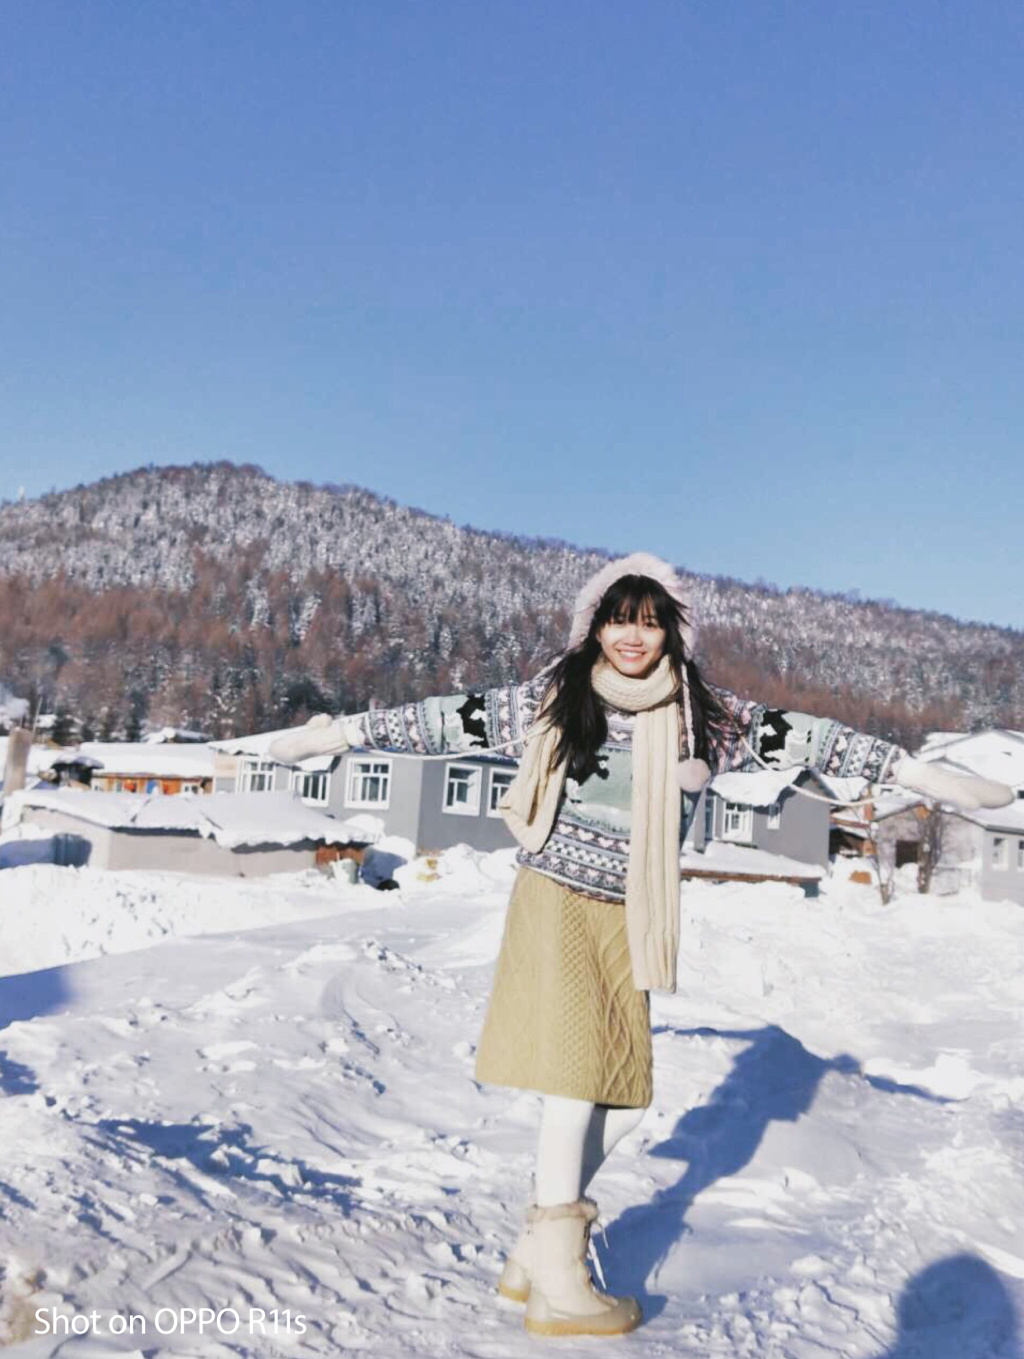 技巧分享如何用oppor11s拍出漂亮的雪景人像